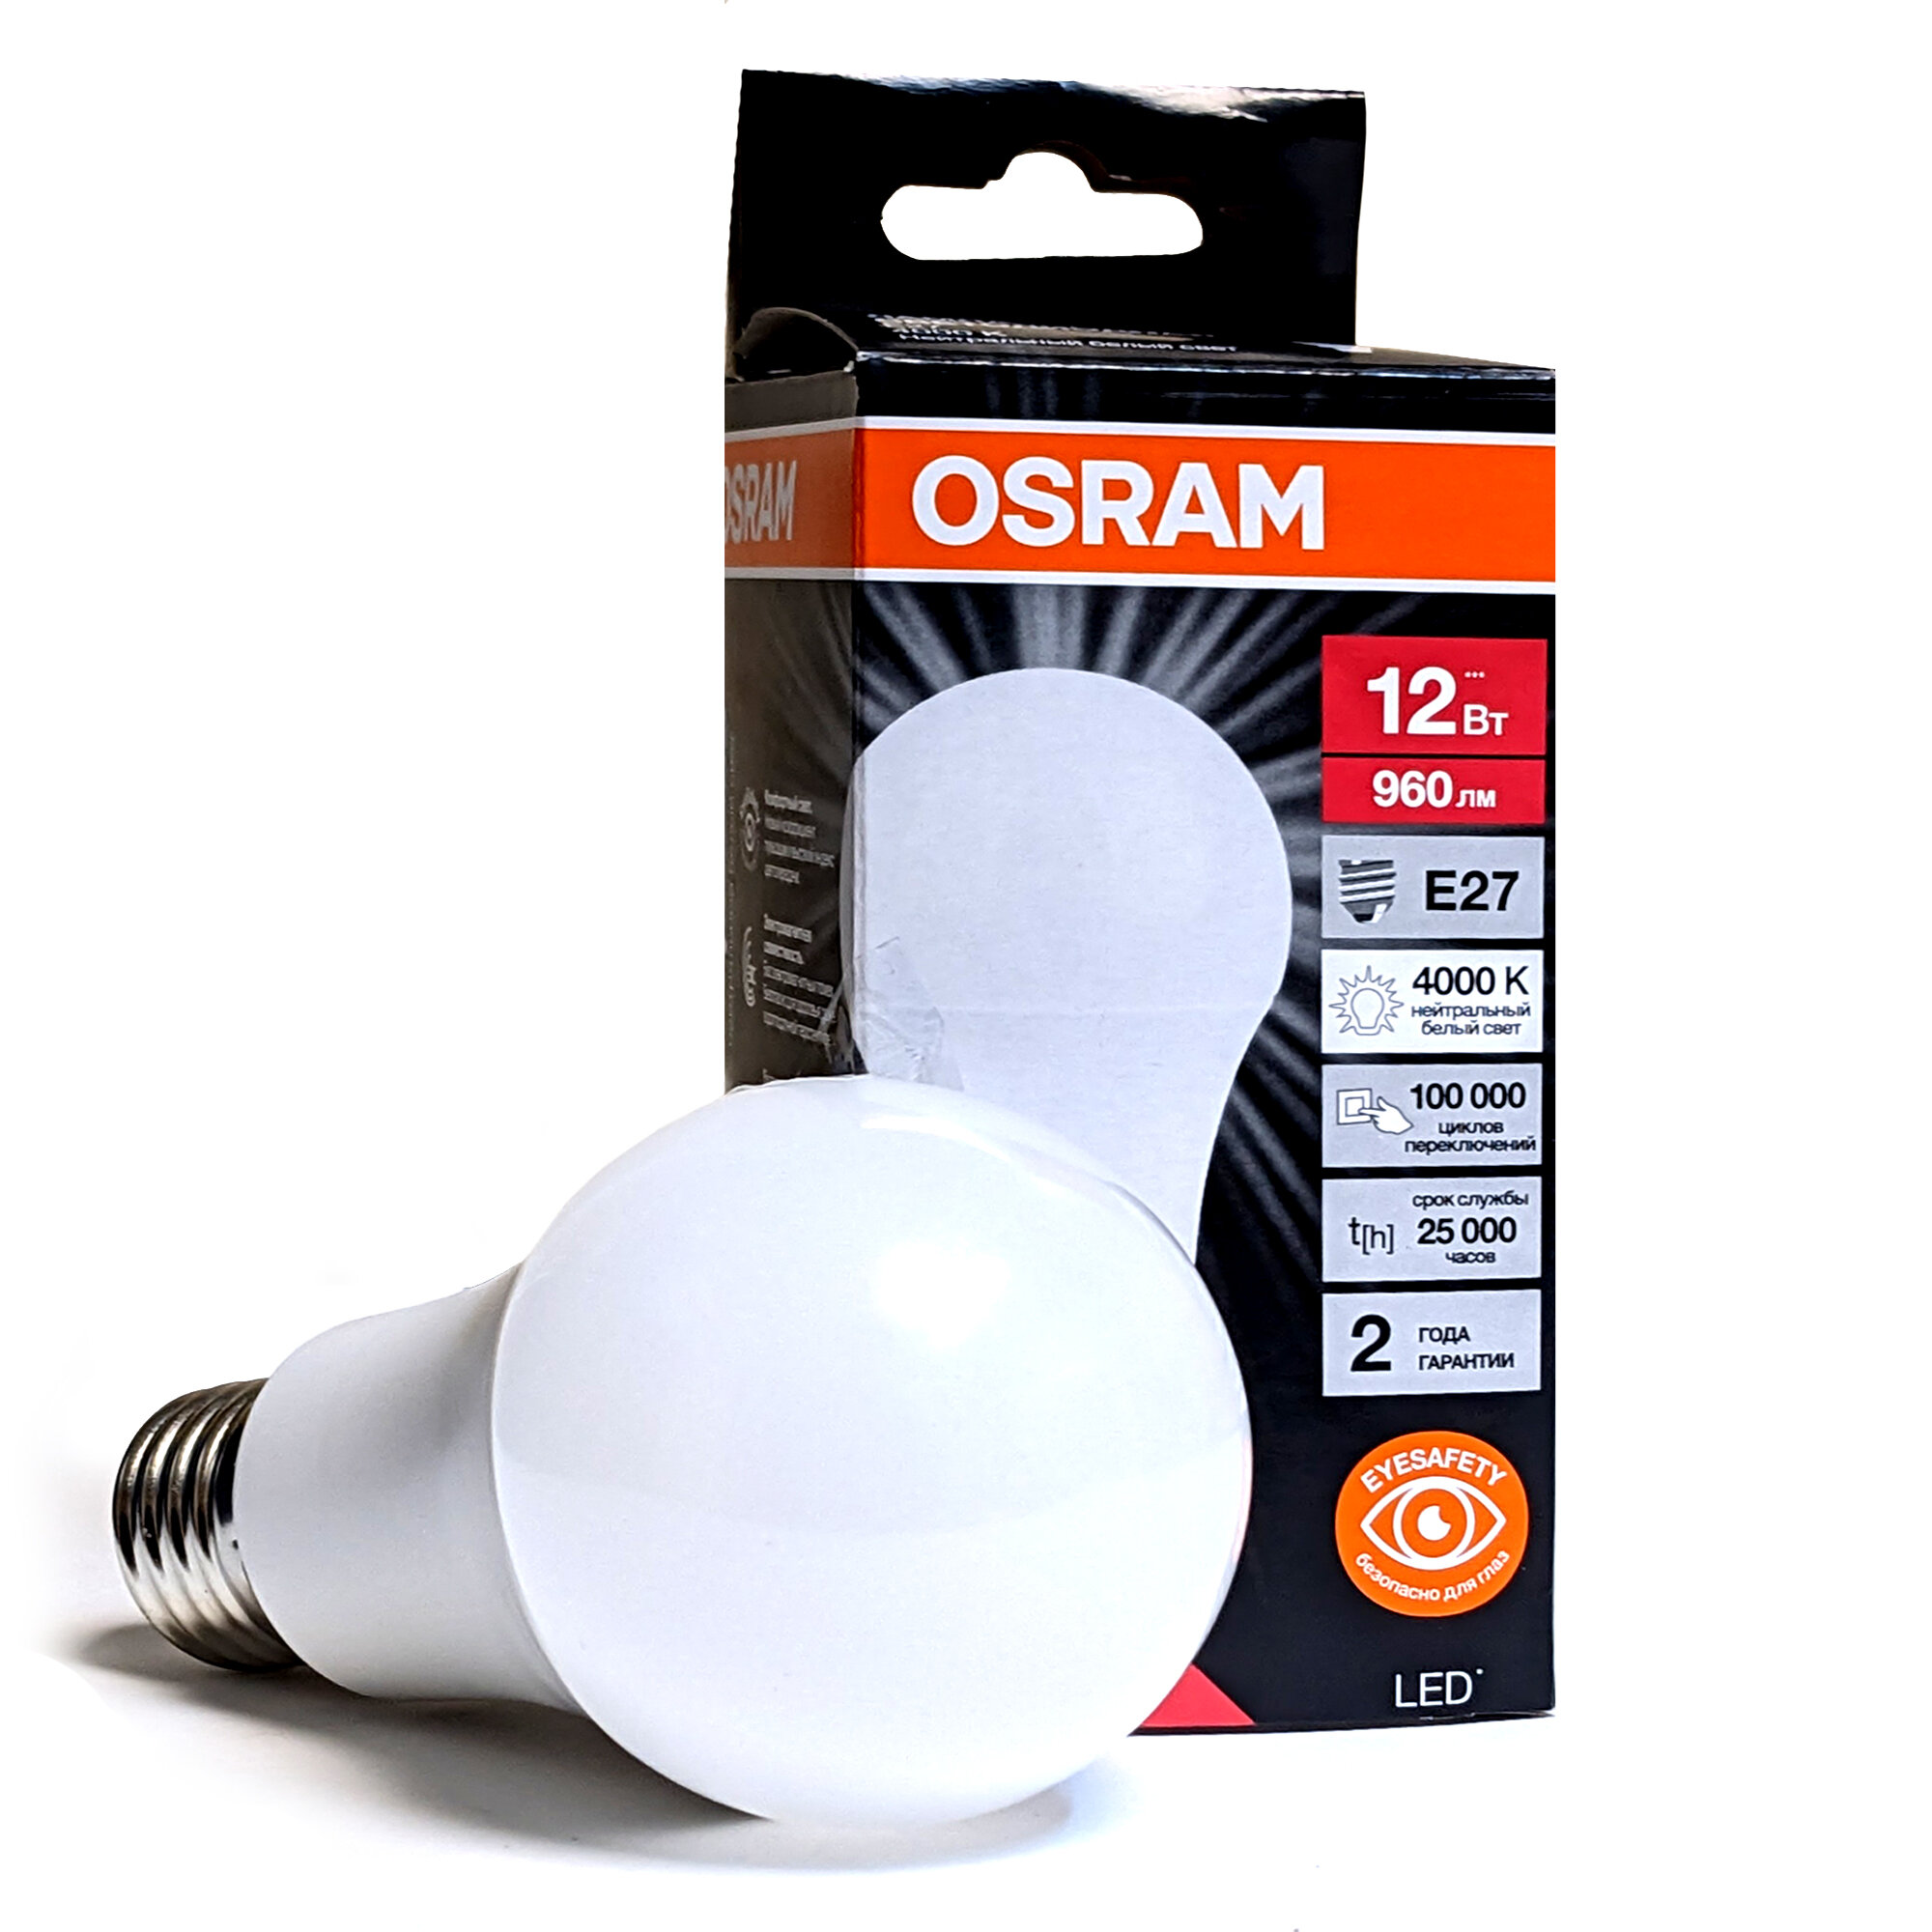 Светодиодная лампа OSRAM для энергосбережения 12Вт 4000K E27, 230В, OSRAM (1шт)